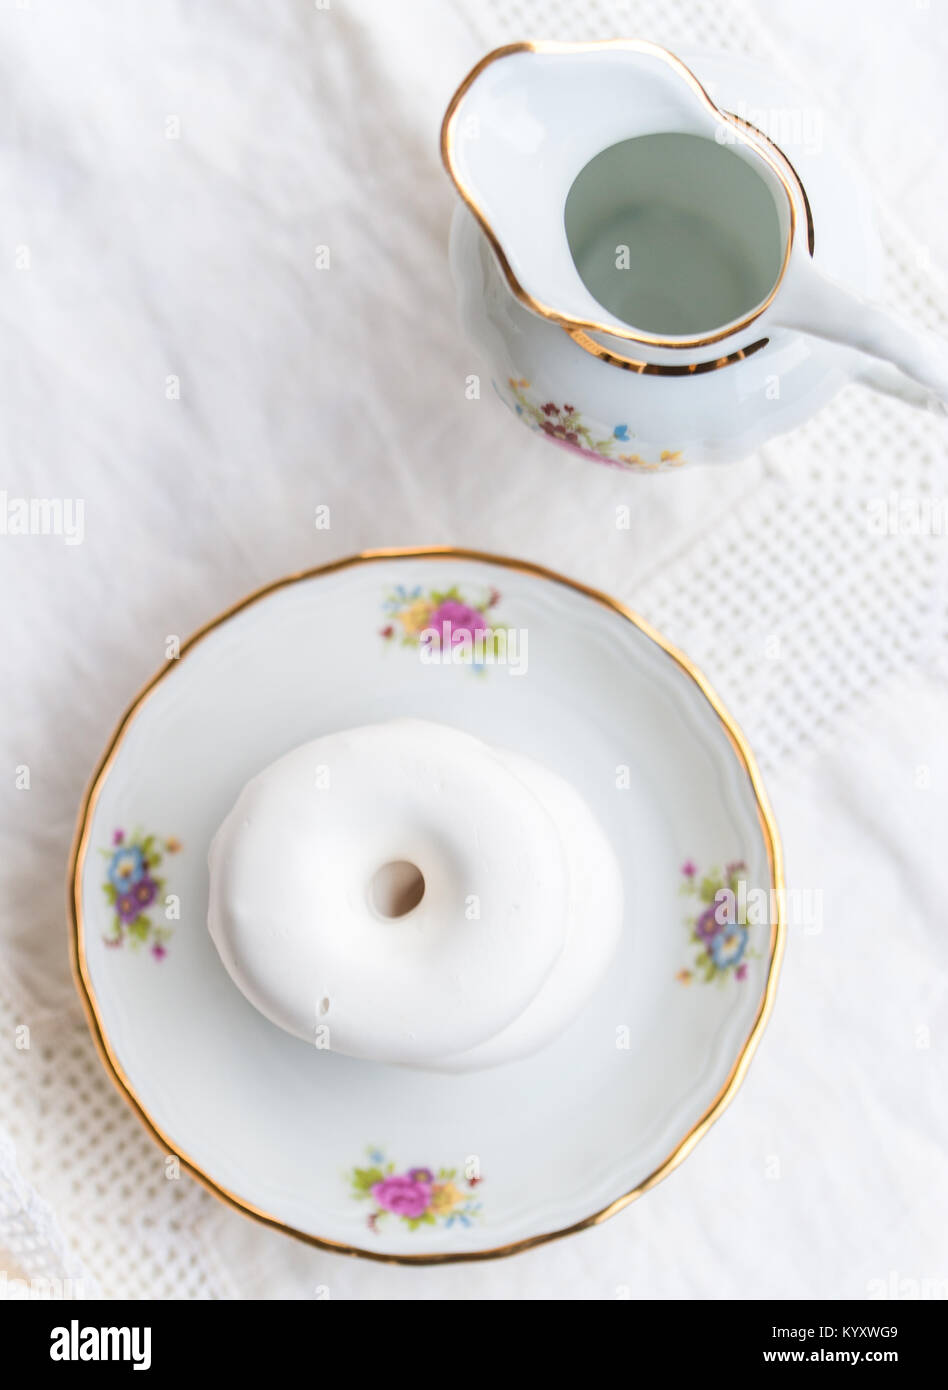 Luxus Porzellan Tee auf weißen Tischdecke mit weiße Bagels Glasur auf einer Platte Gesetzt Stockfoto